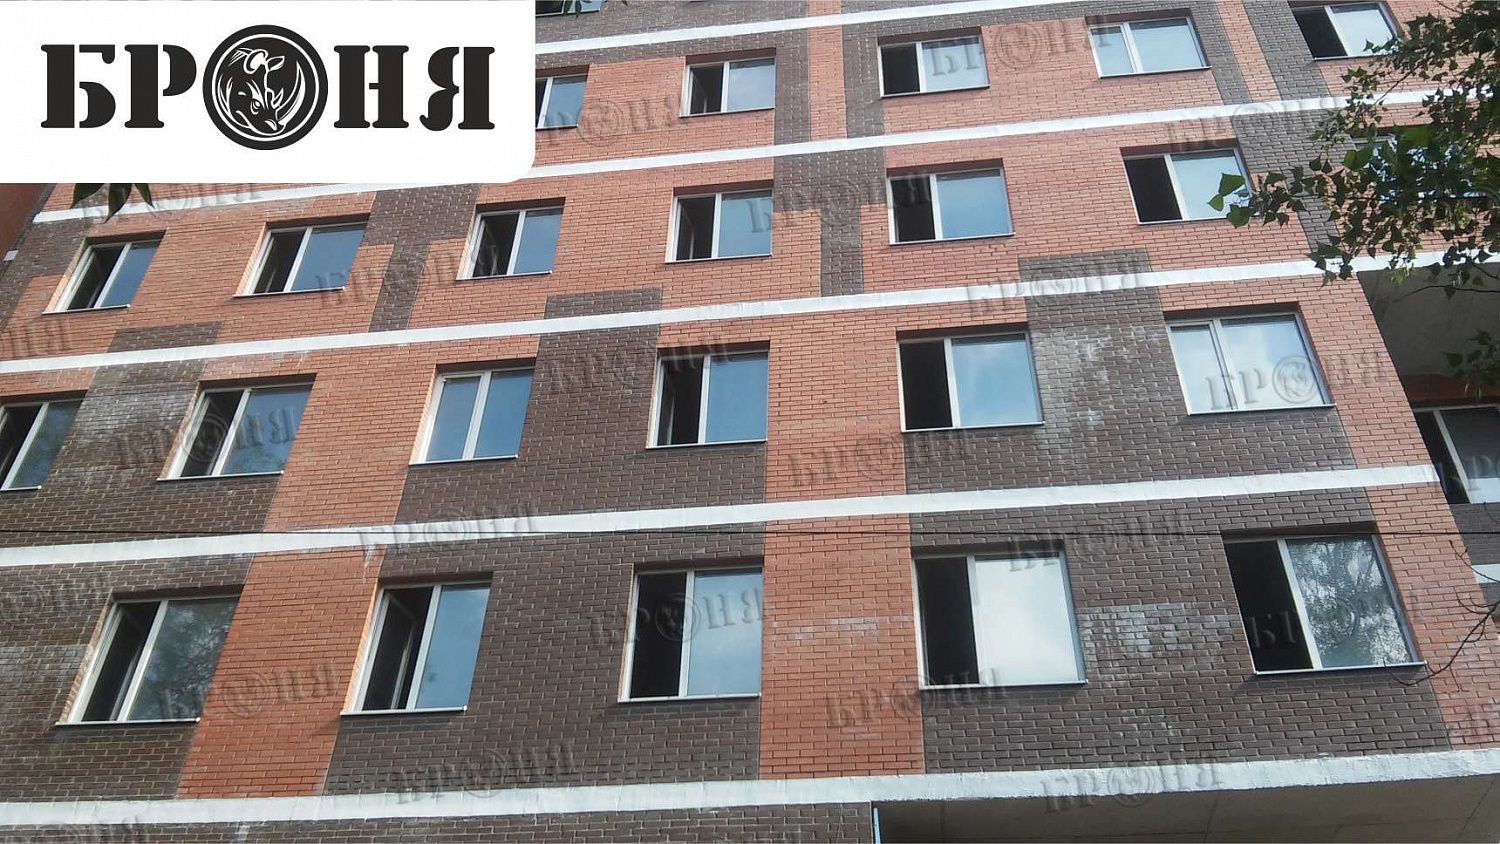 Ростов-на-Дону, плиты перекрытия в монолитном кирпичном строительстве